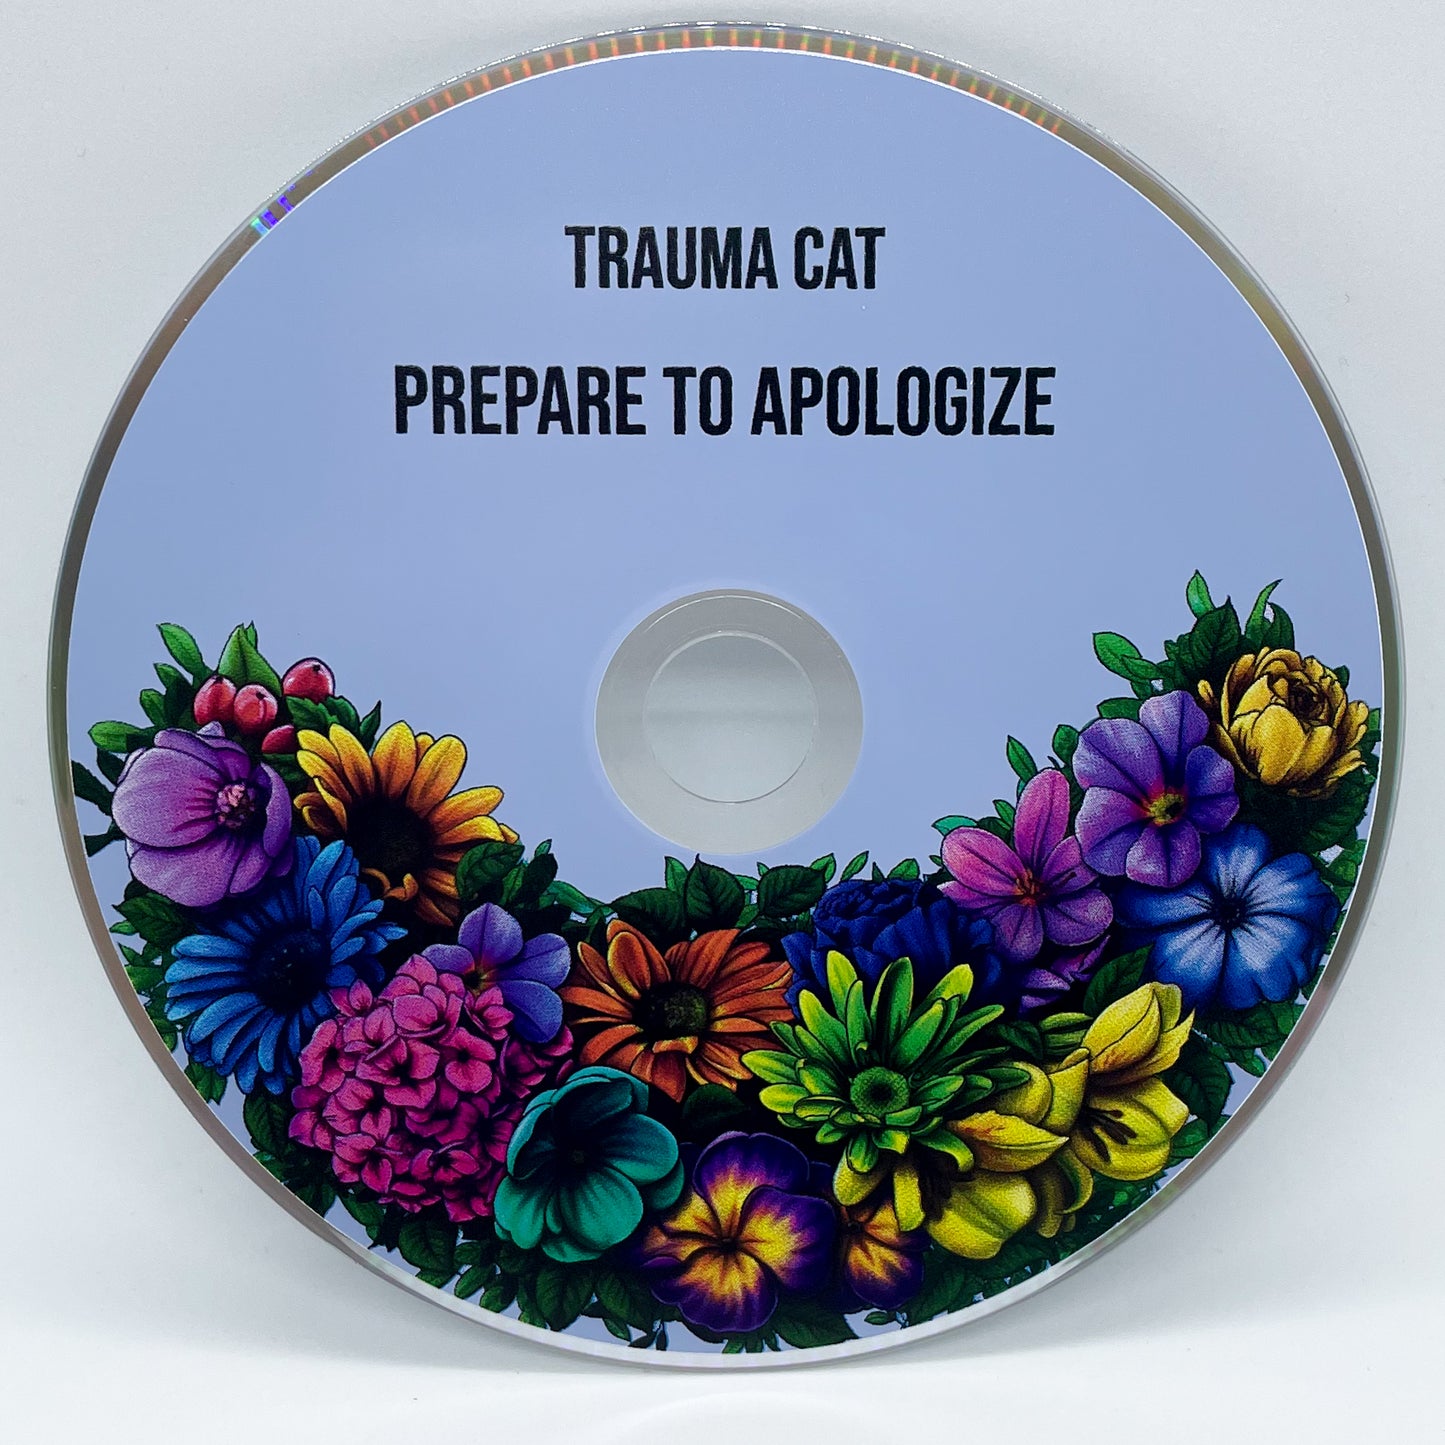 'Prepare to Apologize' CD